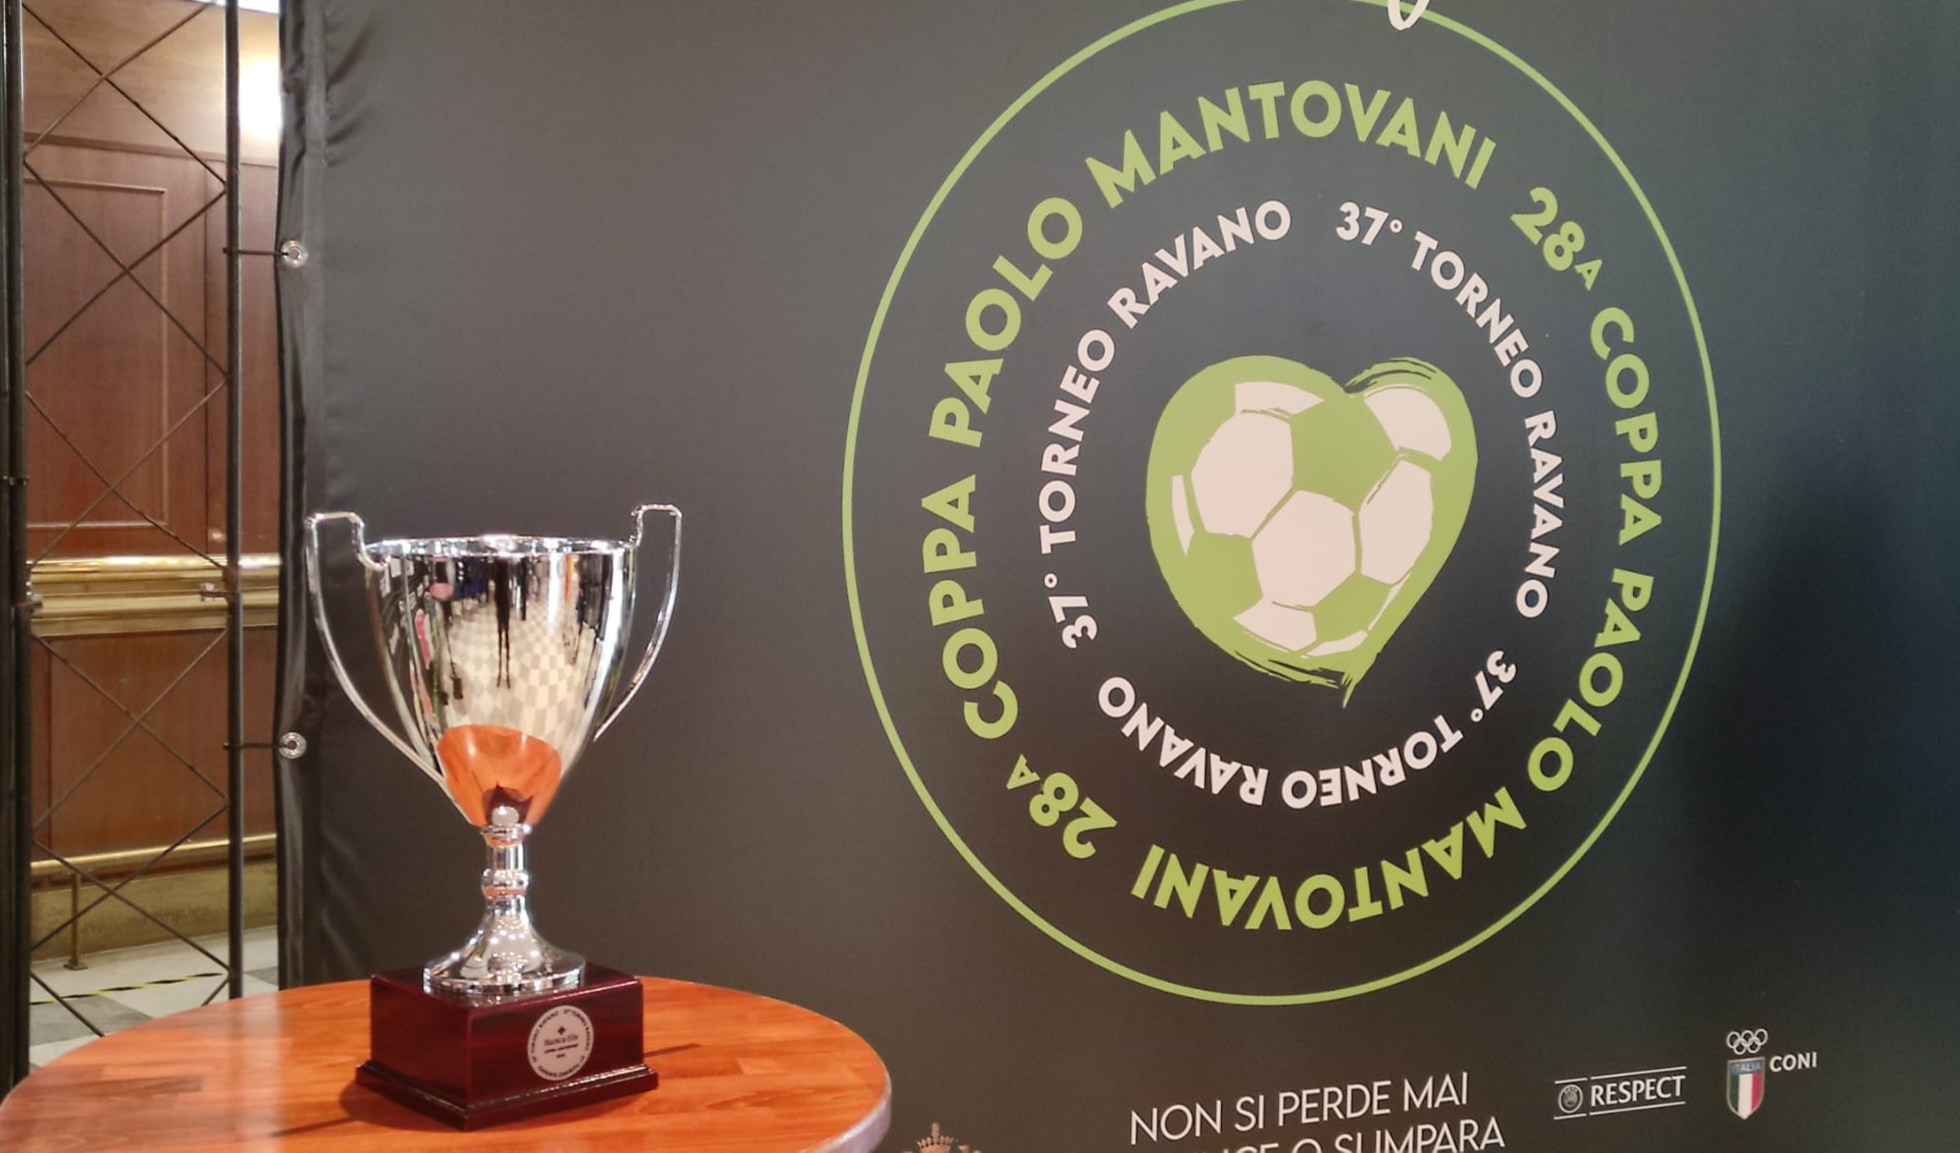 Dopo due anni di stop torna il torneo Ravano, Ludovica Mantovani: 